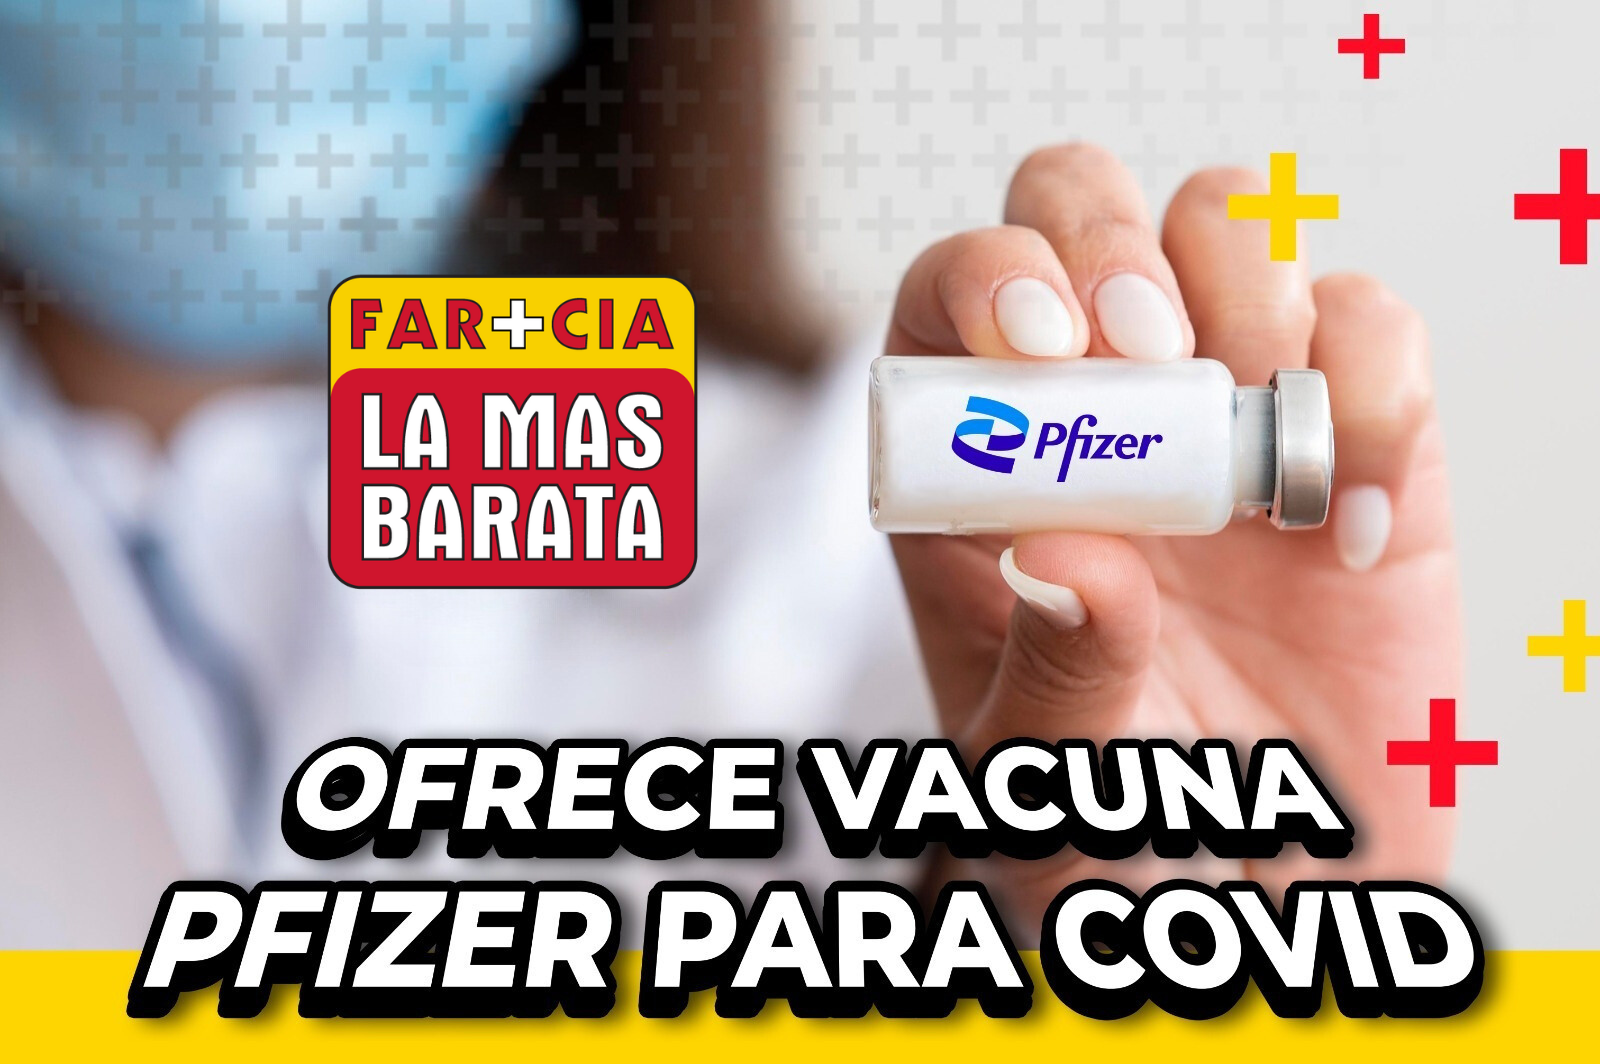 Farmacia La Más Barata Ofrece Vacuna Pfizer para COVID